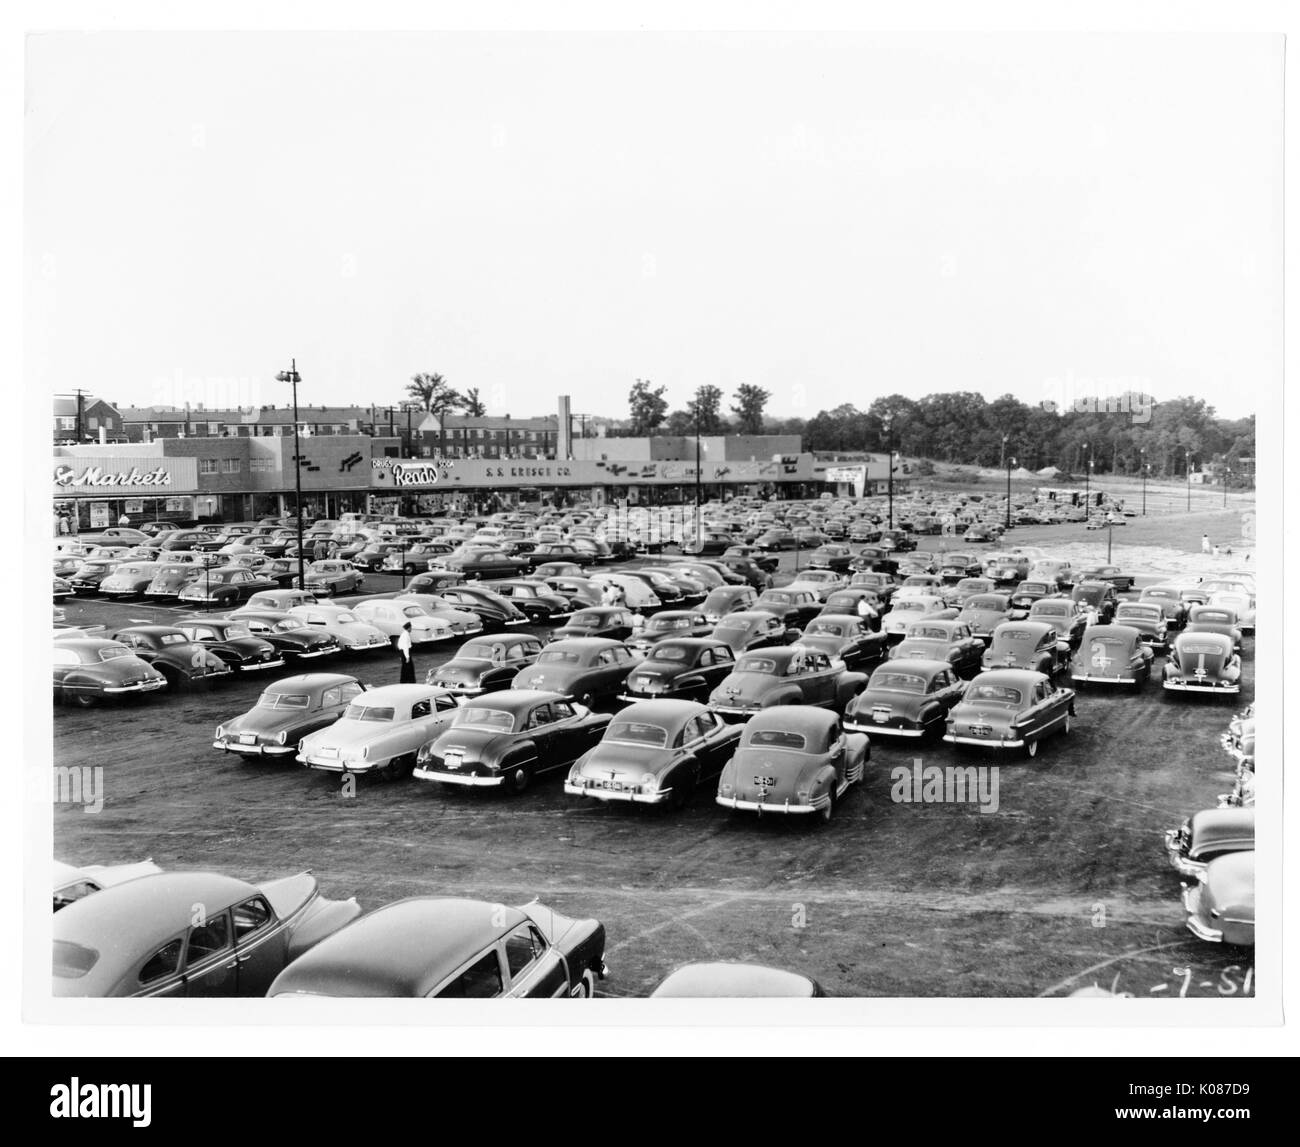 Parkplatz von Northwood Einkaufszentrum mit Hunderten von Autos, speichert im Hintergrund einschließlich Acme Märkte und liest, Bäume und Häuser im Hintergrund, Parkplatz hat viele Lichter der Stadt, Baltimore, Maryland, 1930. Stockfoto